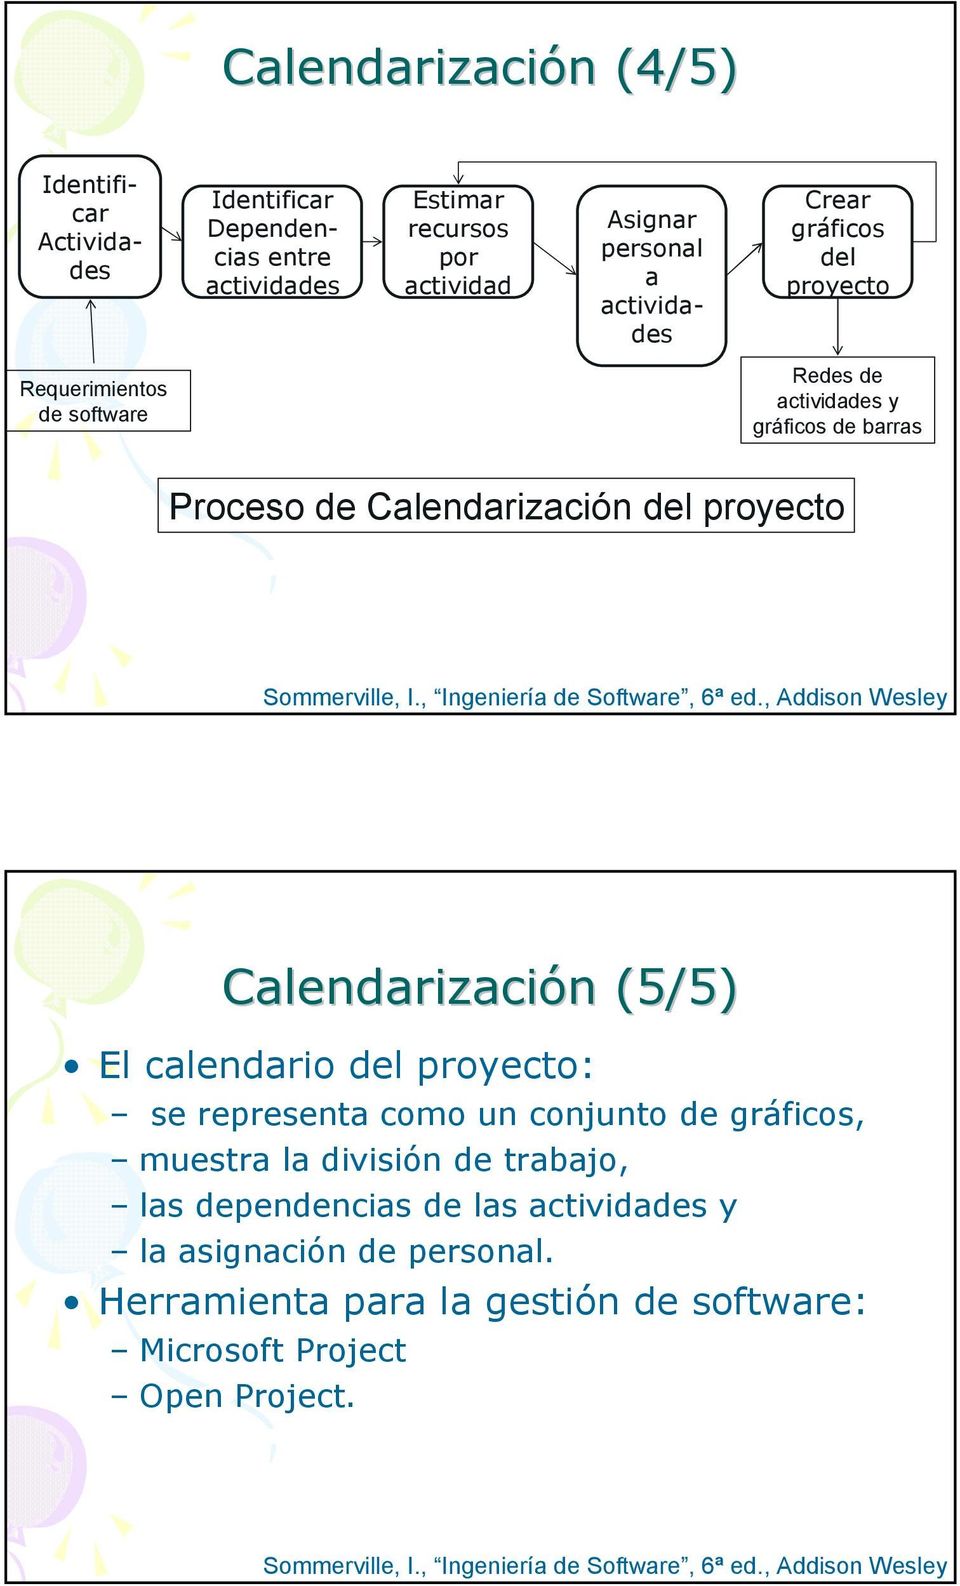 , Addison Wesley Calendarización (5/5) El calendario del proyecto: se representa como un conjunto de gráficos, muestra la división de trabajo, las dependencias de las